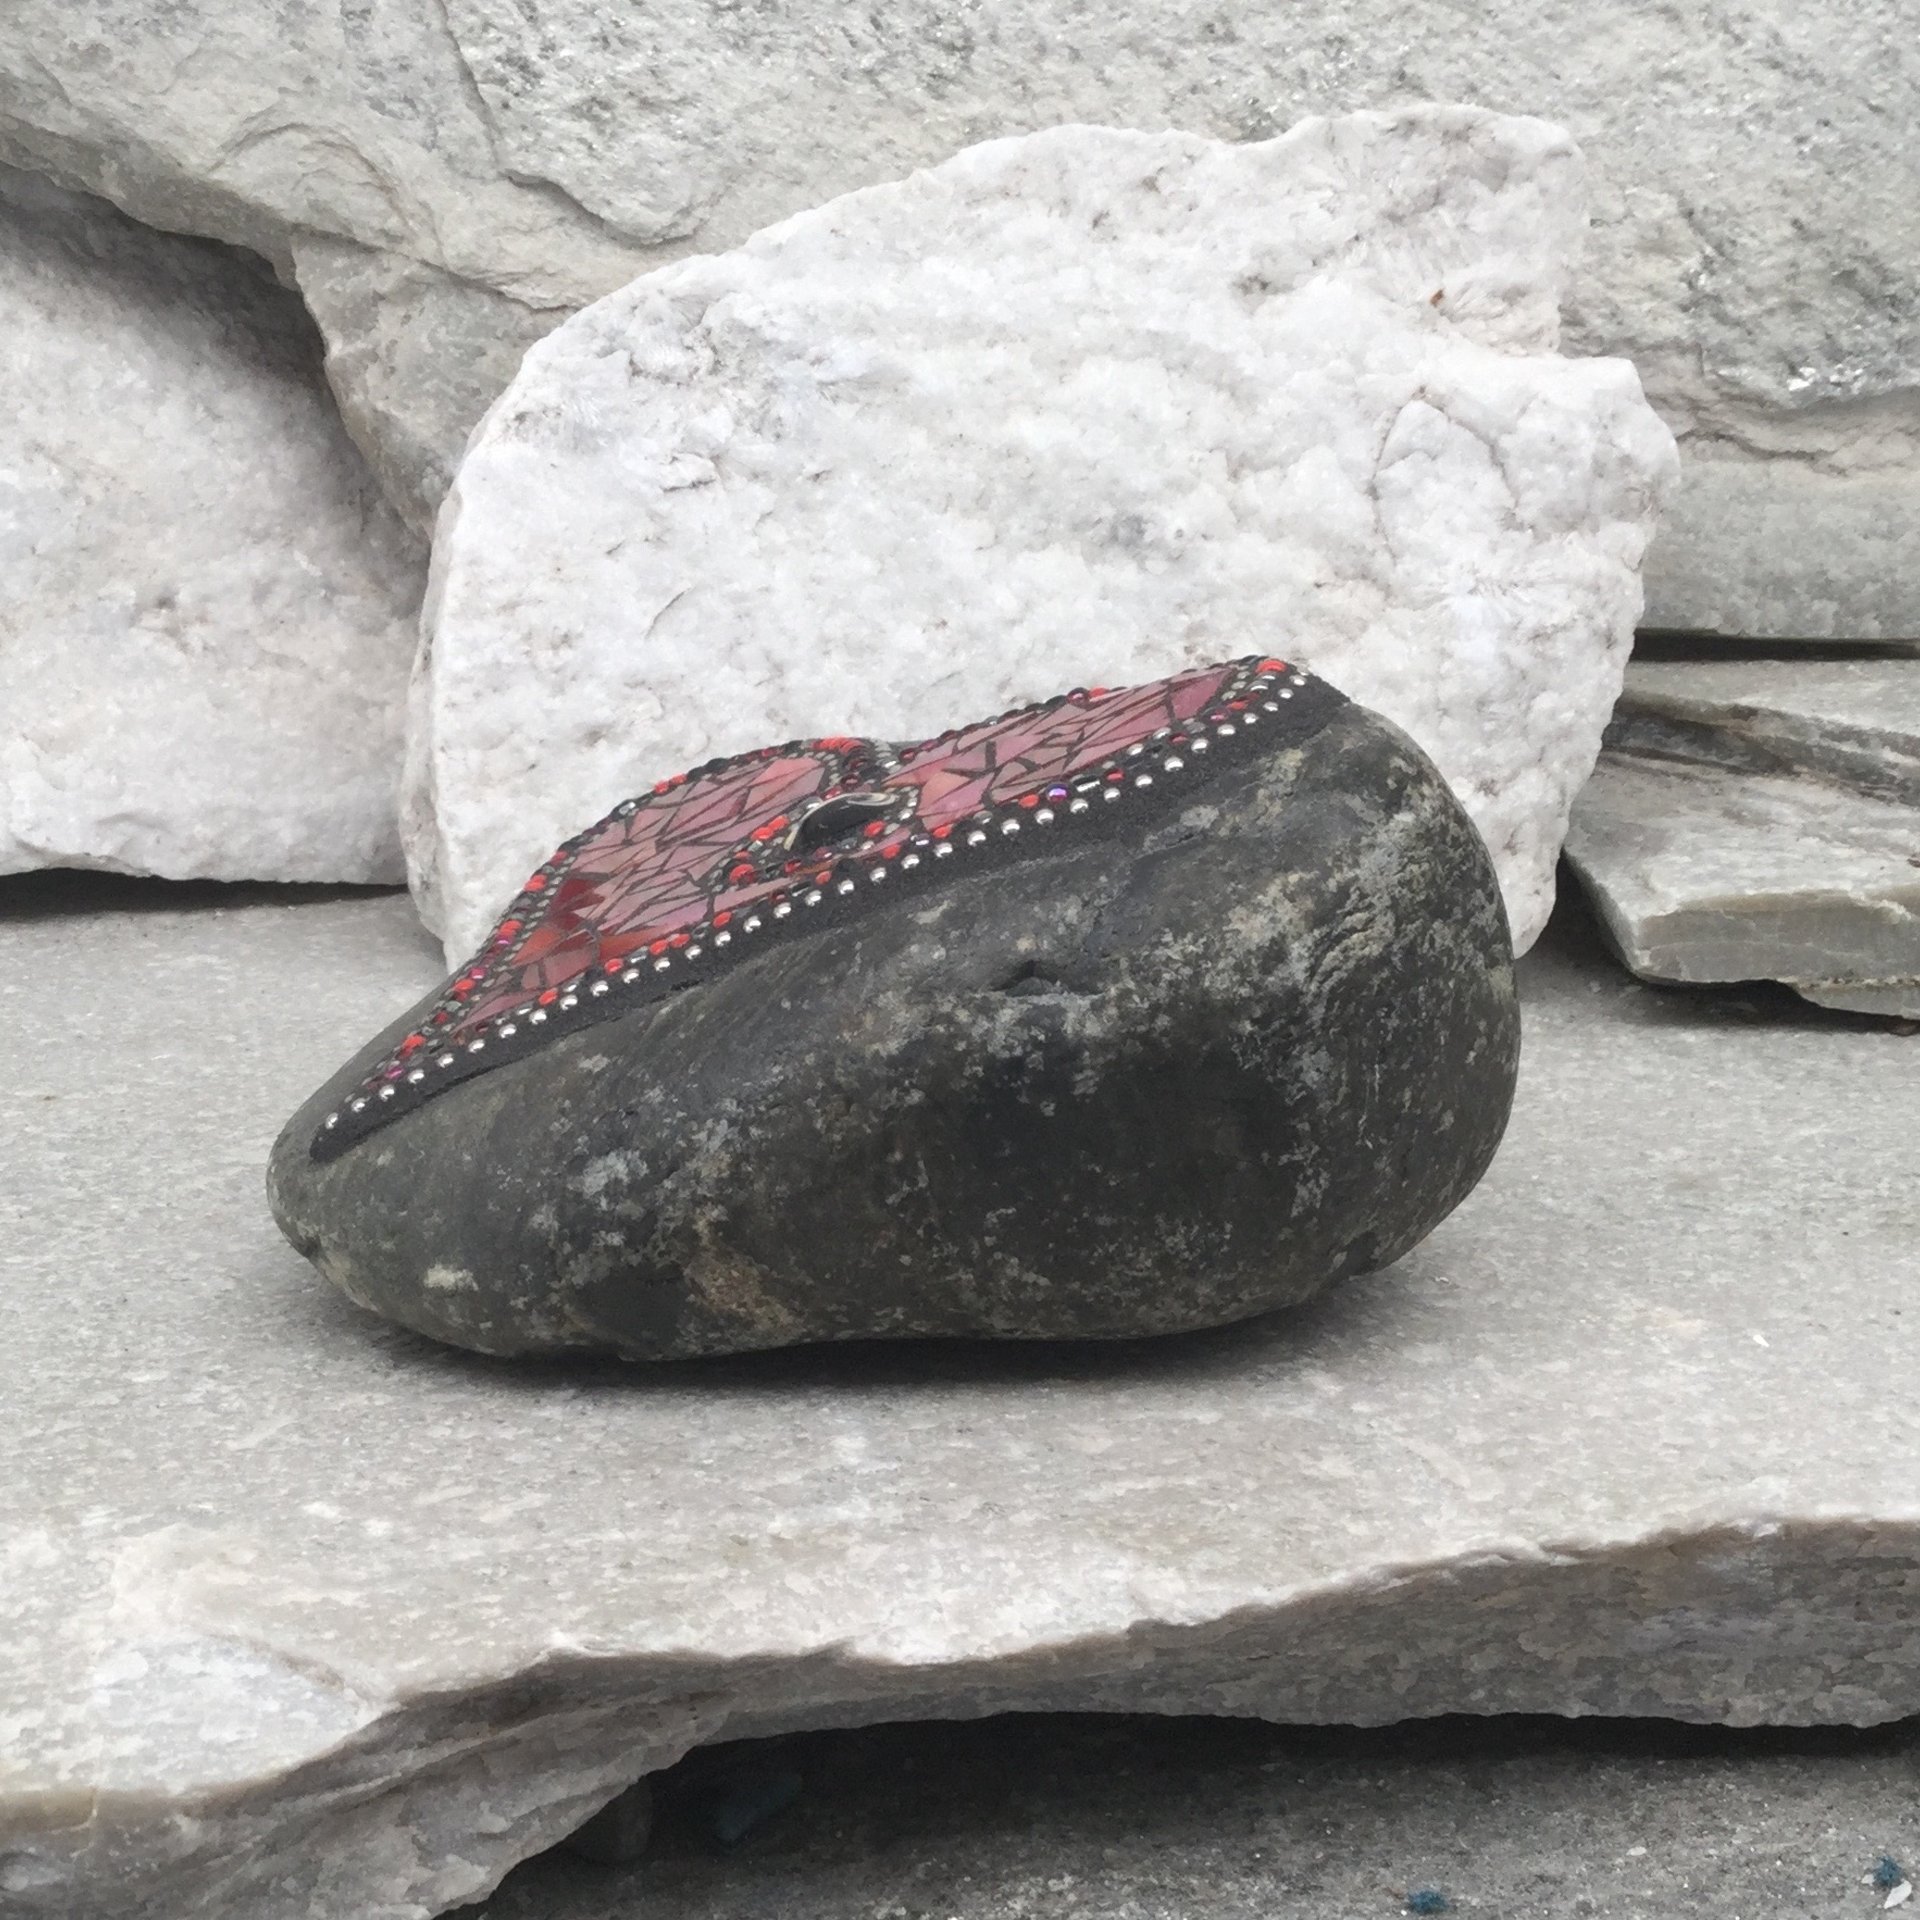 Iridescent Red Mosaic Heart, Mosaic Rock, Mosaic Garden Stone,